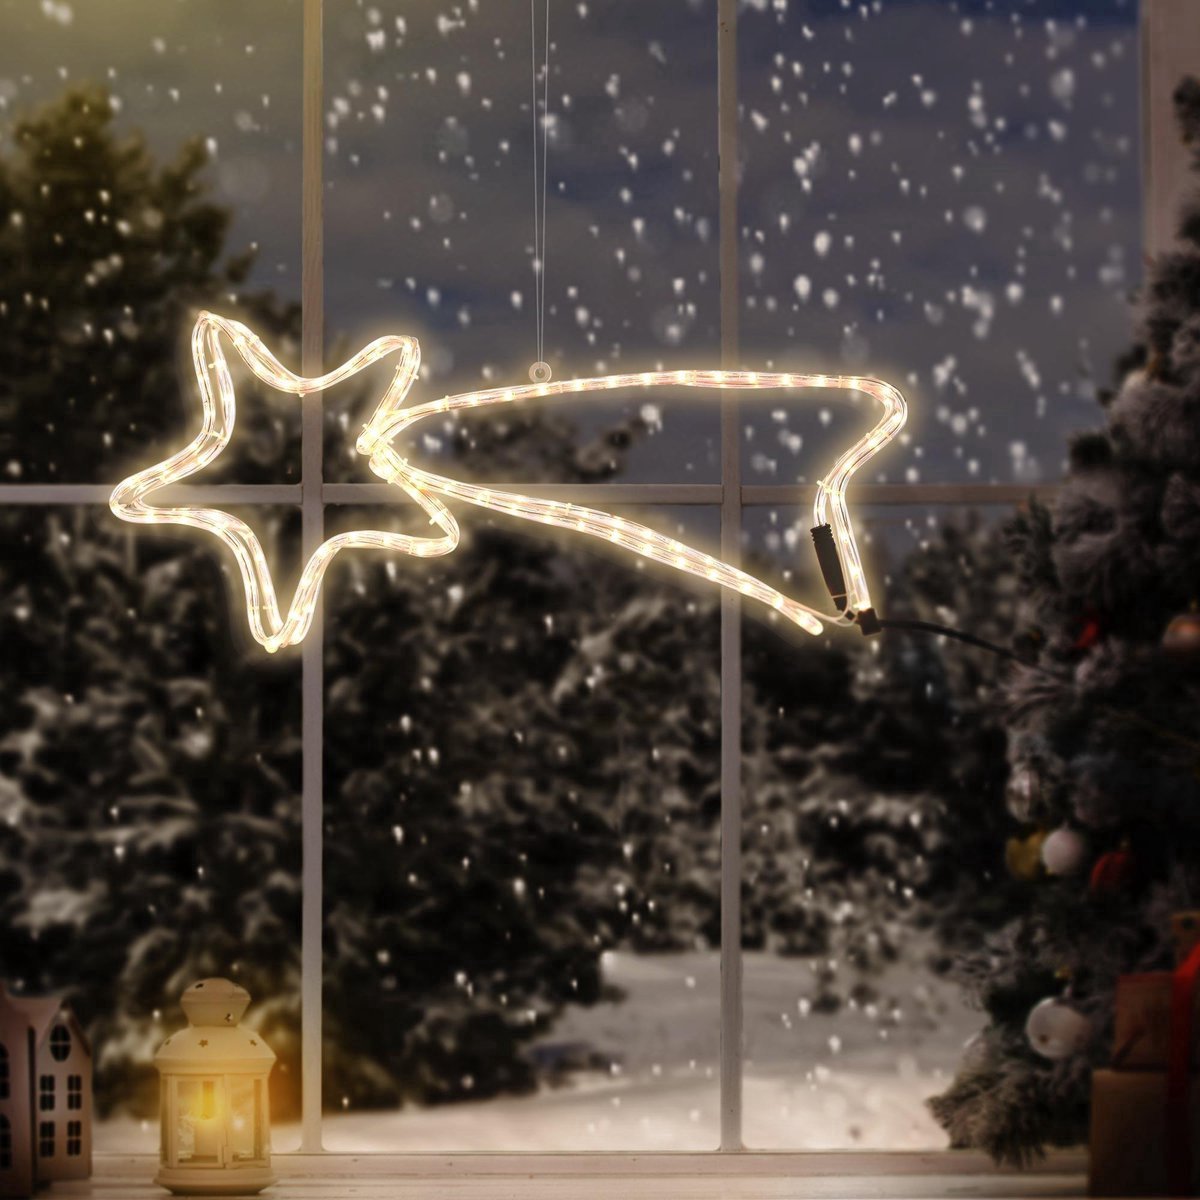 La Lampe De Noël Et L'étoile Filante